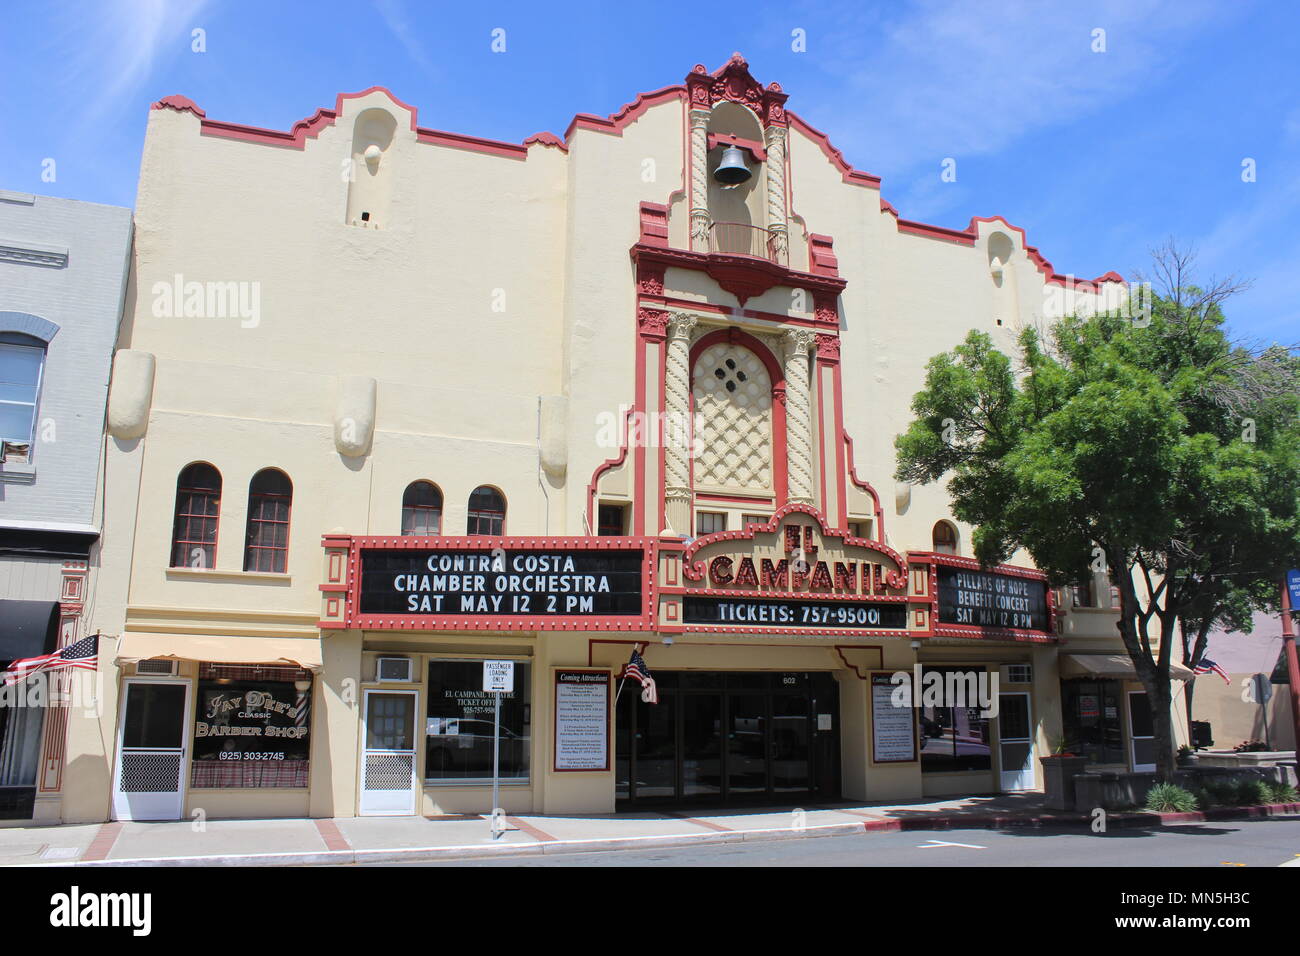 El Campanil Theatre, Antioch, California Stock Photo